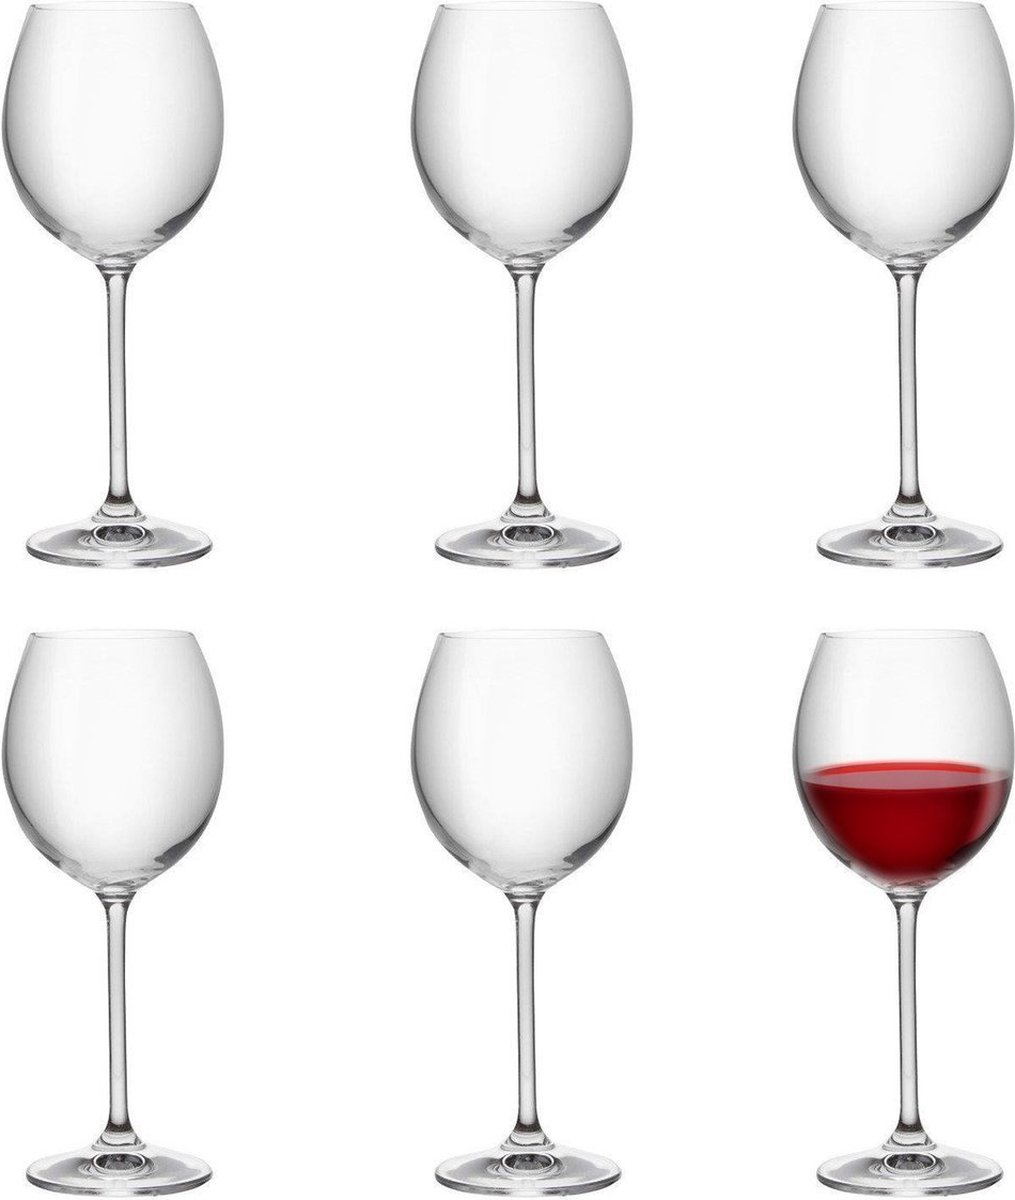 Florina Veronica | Wijnglazen | Rode wijn | Witte wijn | Set van 6 | 350ml | Wijn glazen